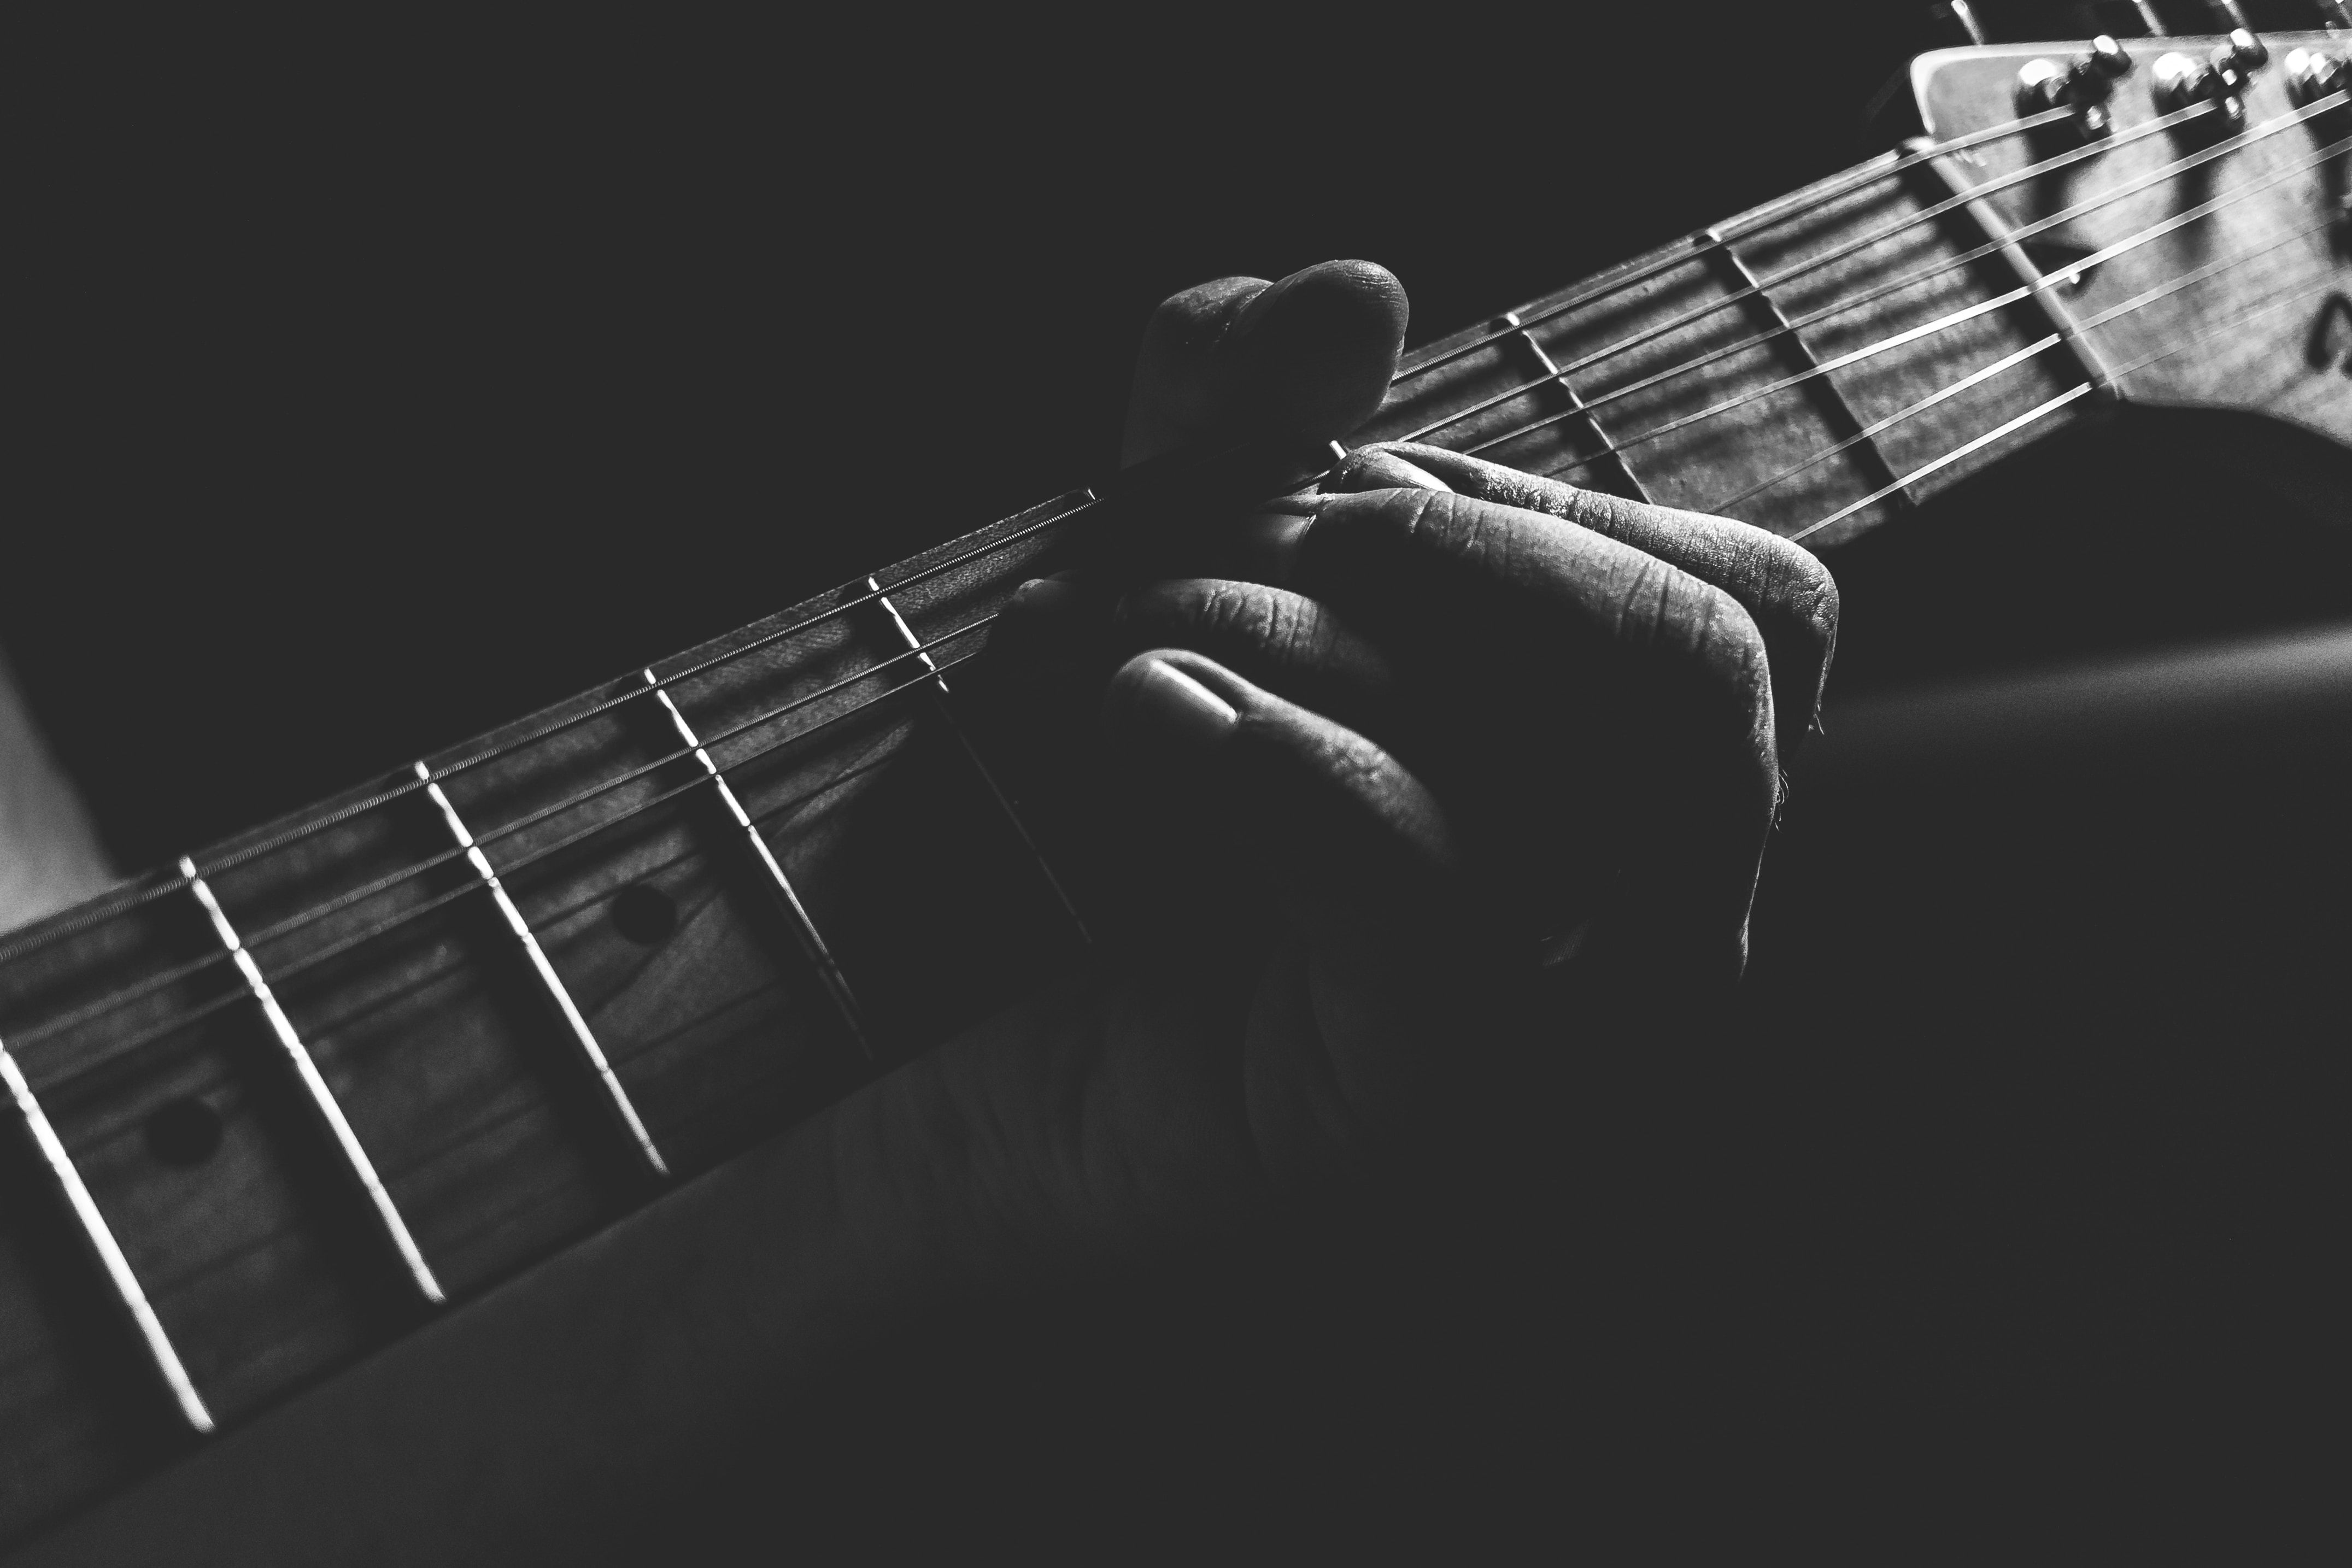 Cận cảnh phím đàn của một cây đàn guitar khi một người đang chơi